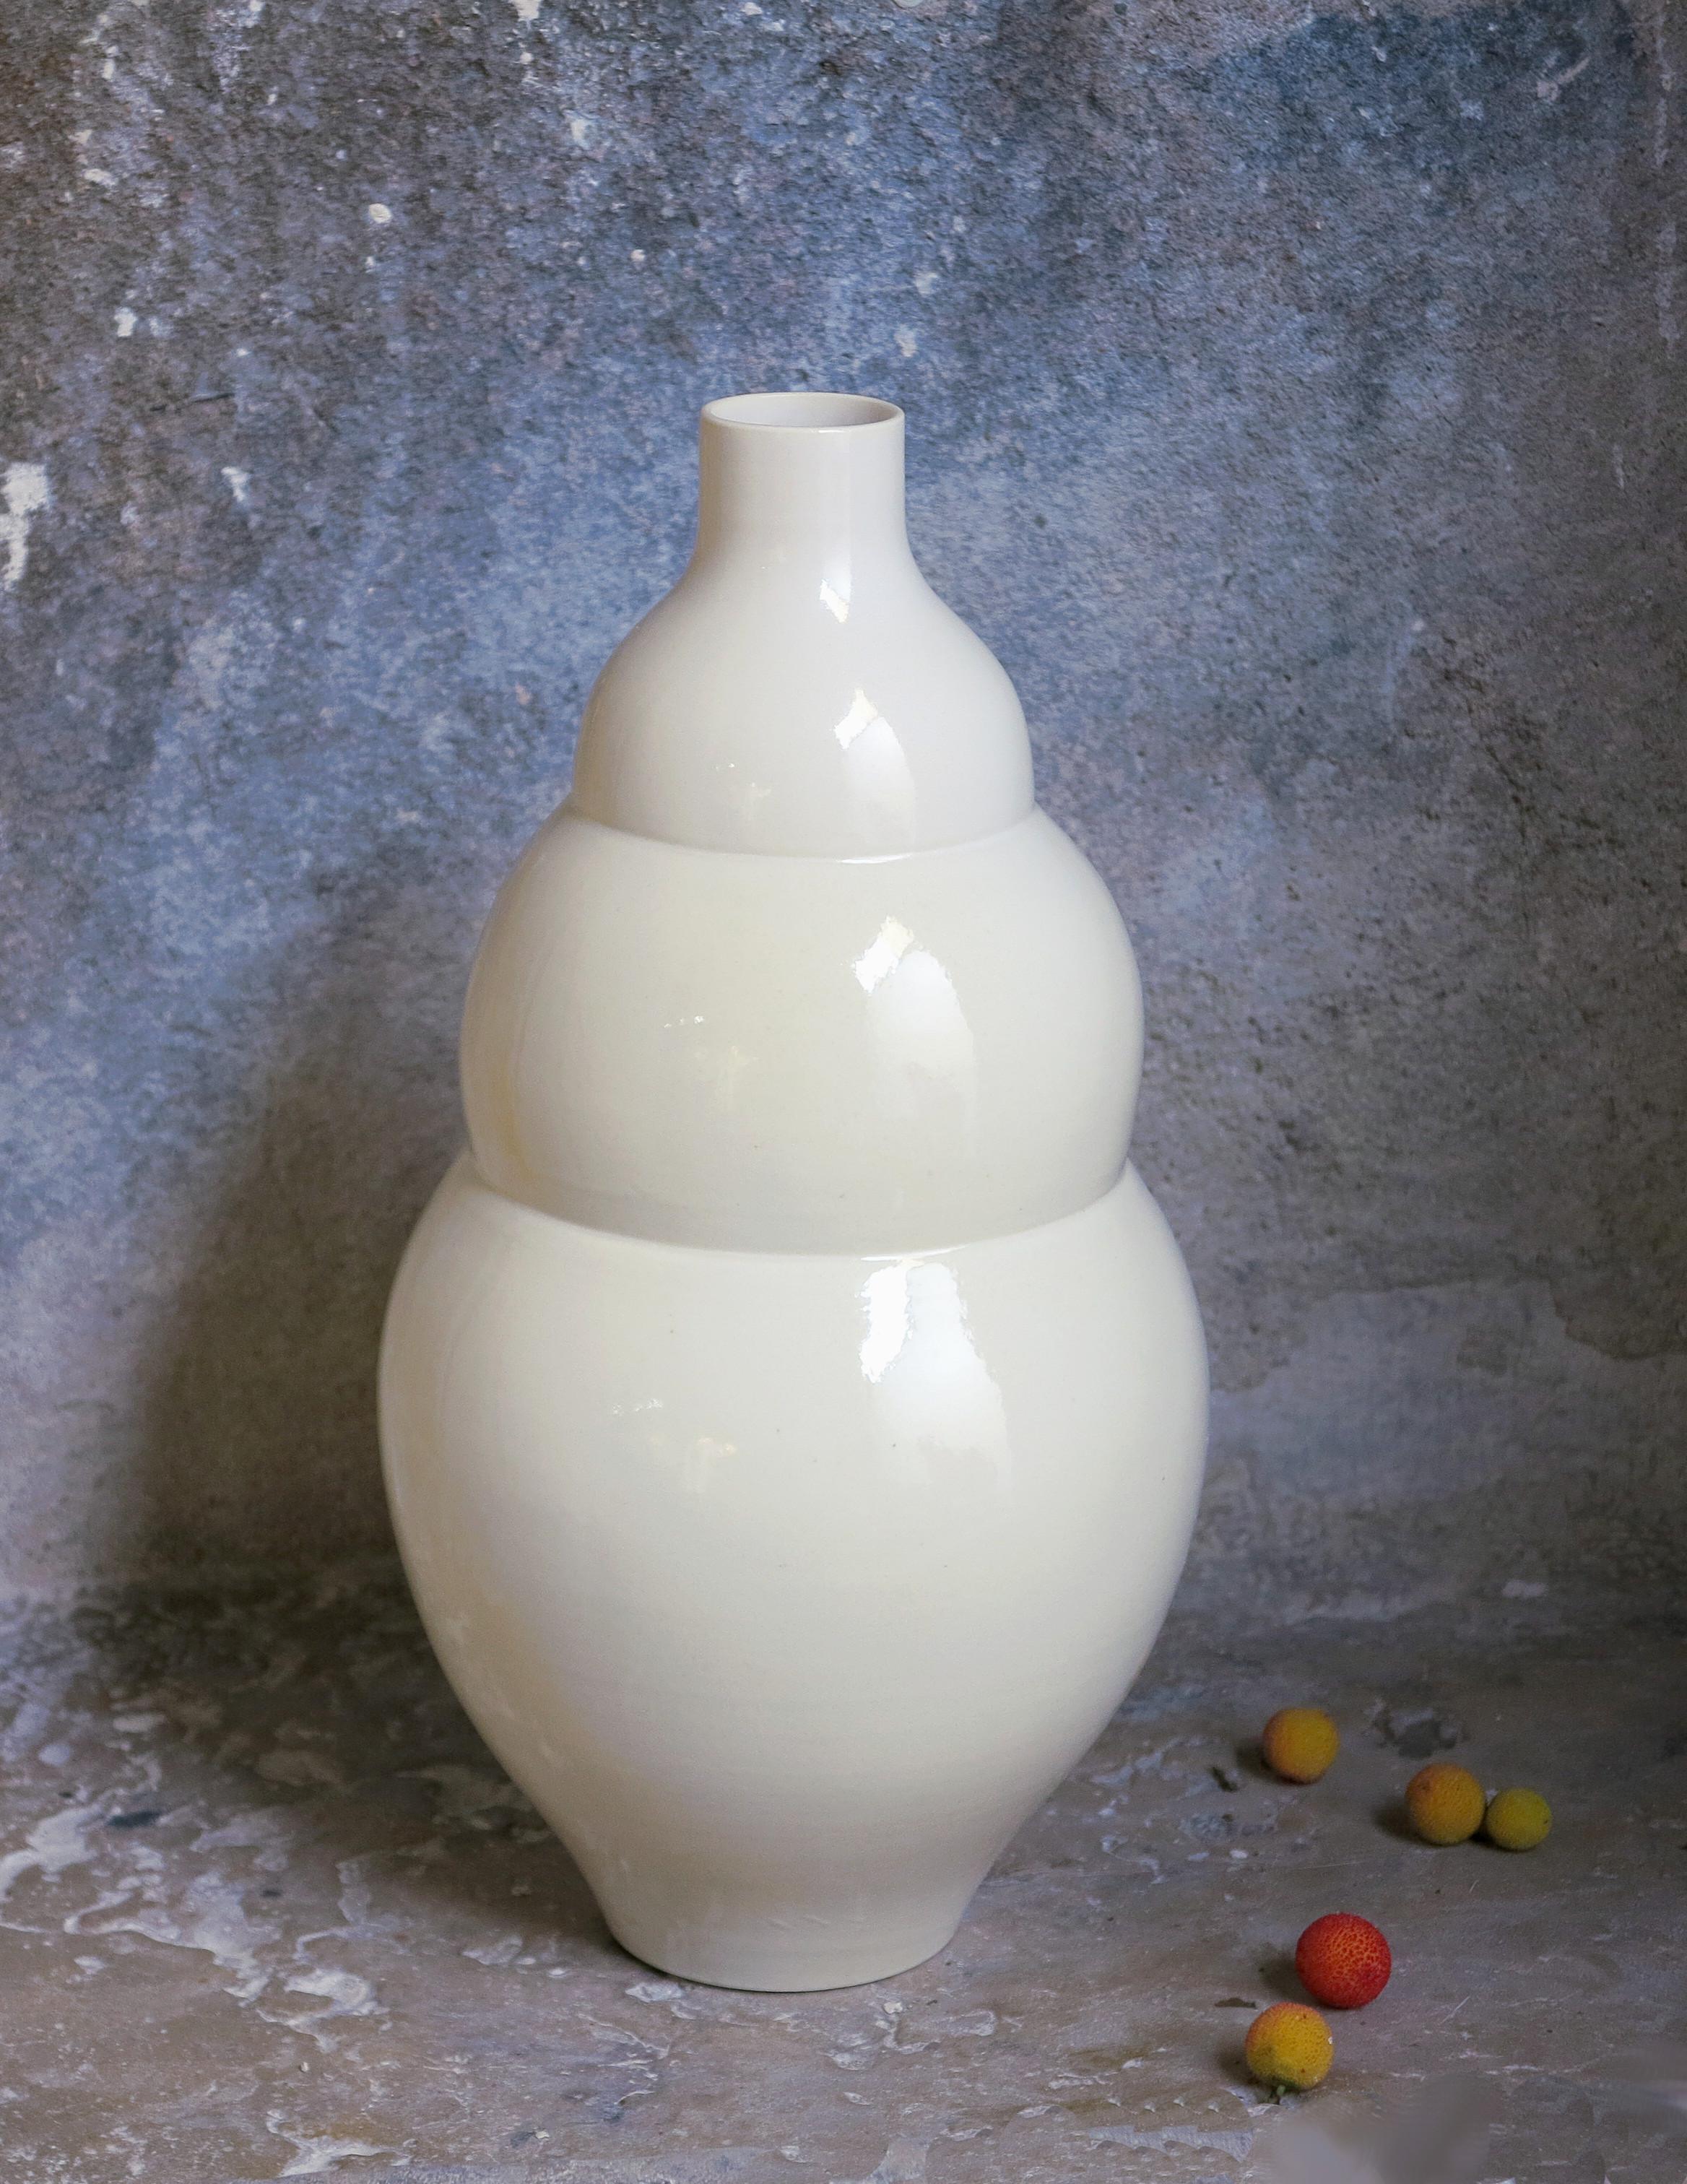 Grand vase blanc par Cica Gomez
Dimensions : Ø 16 x H 35 cm
Matériaux : Porcelaine


Objets habituels. Mon travail est d'abord motivé par la recherche de la ligne. Celle qu'il dessine lorsque l'objet prend forme et place dans l'espace. Ce qui